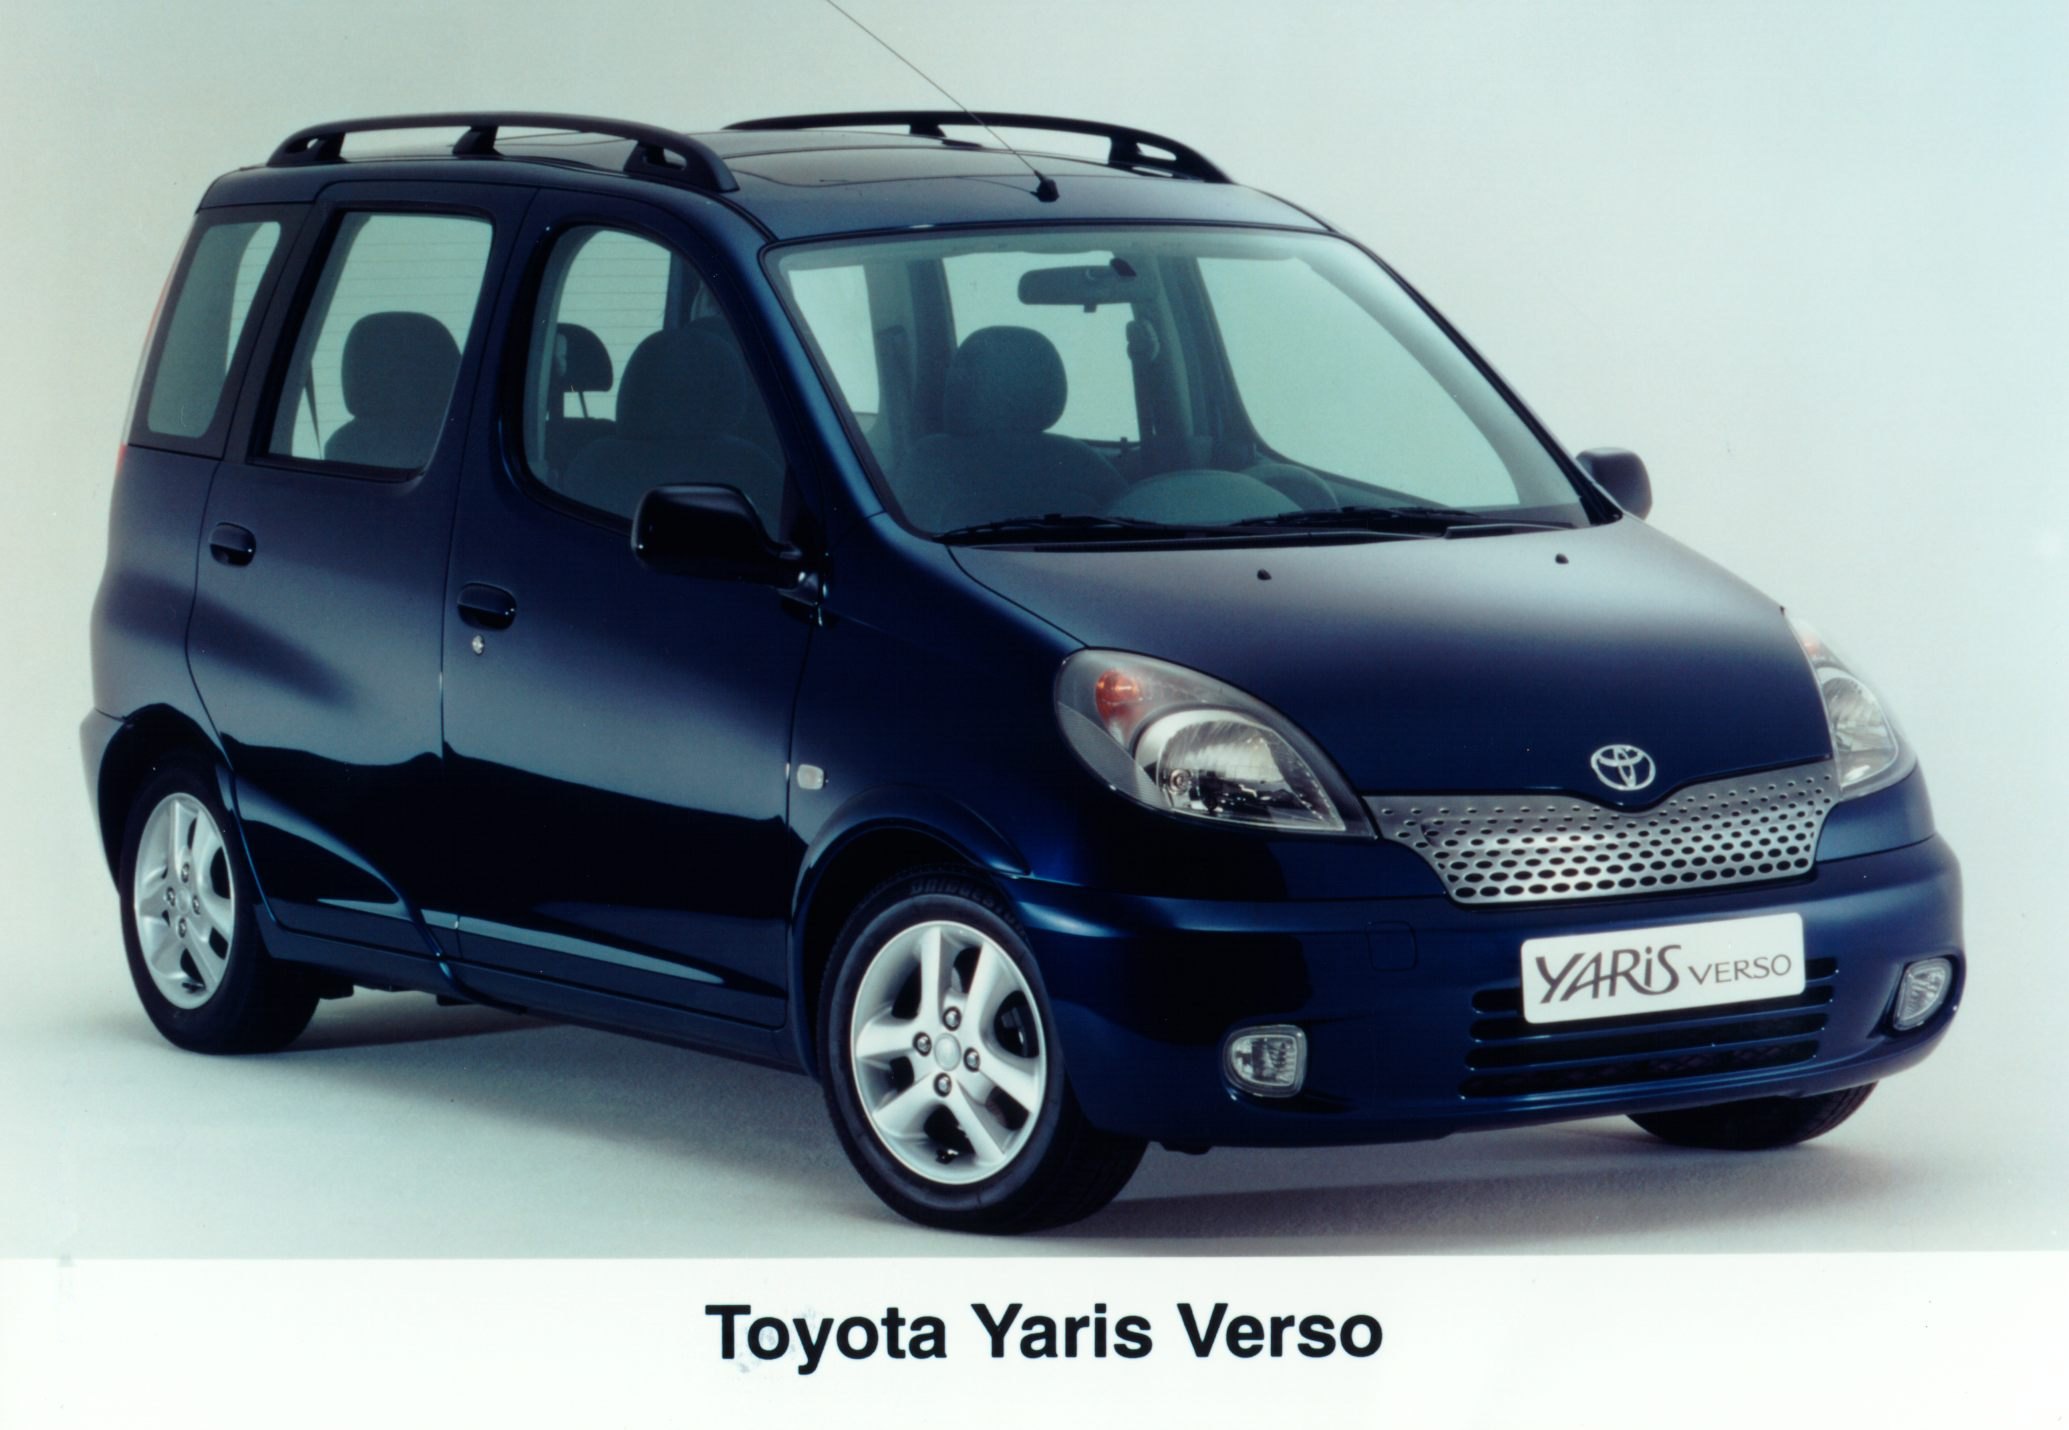 THE YARIS VERSO - Rent Car Rwanda